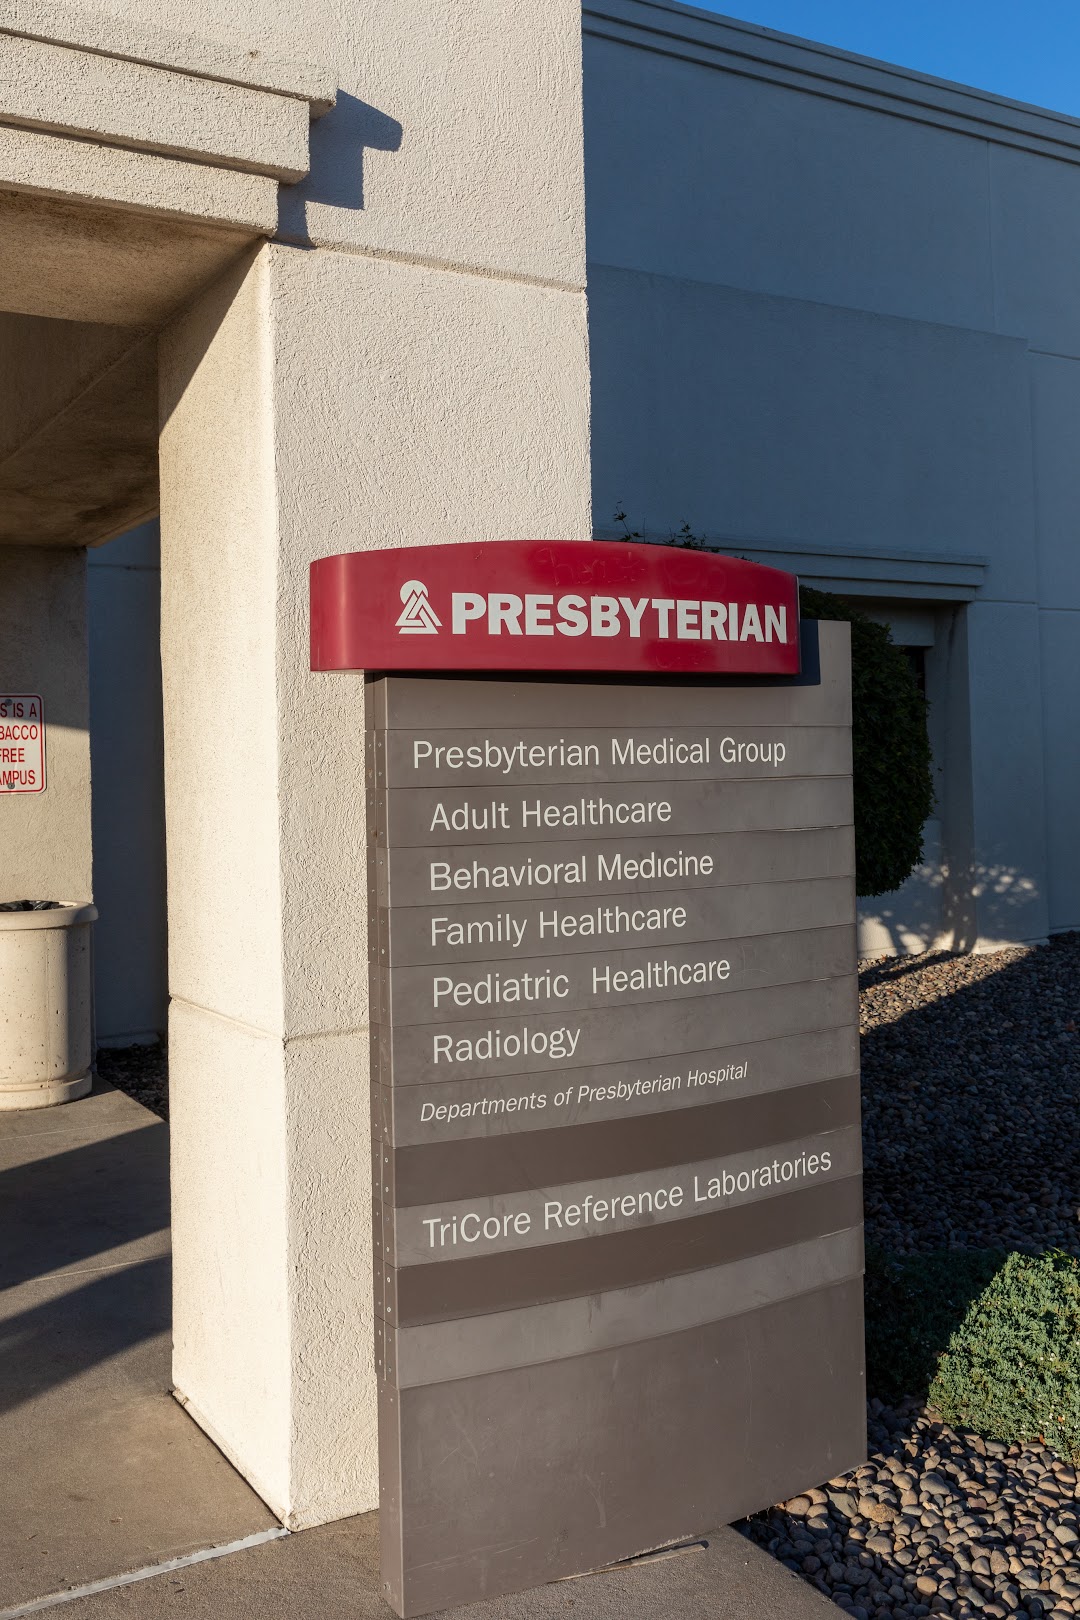 Presbyterian Family Medicine in Albuquerque on San Mateo Blvd